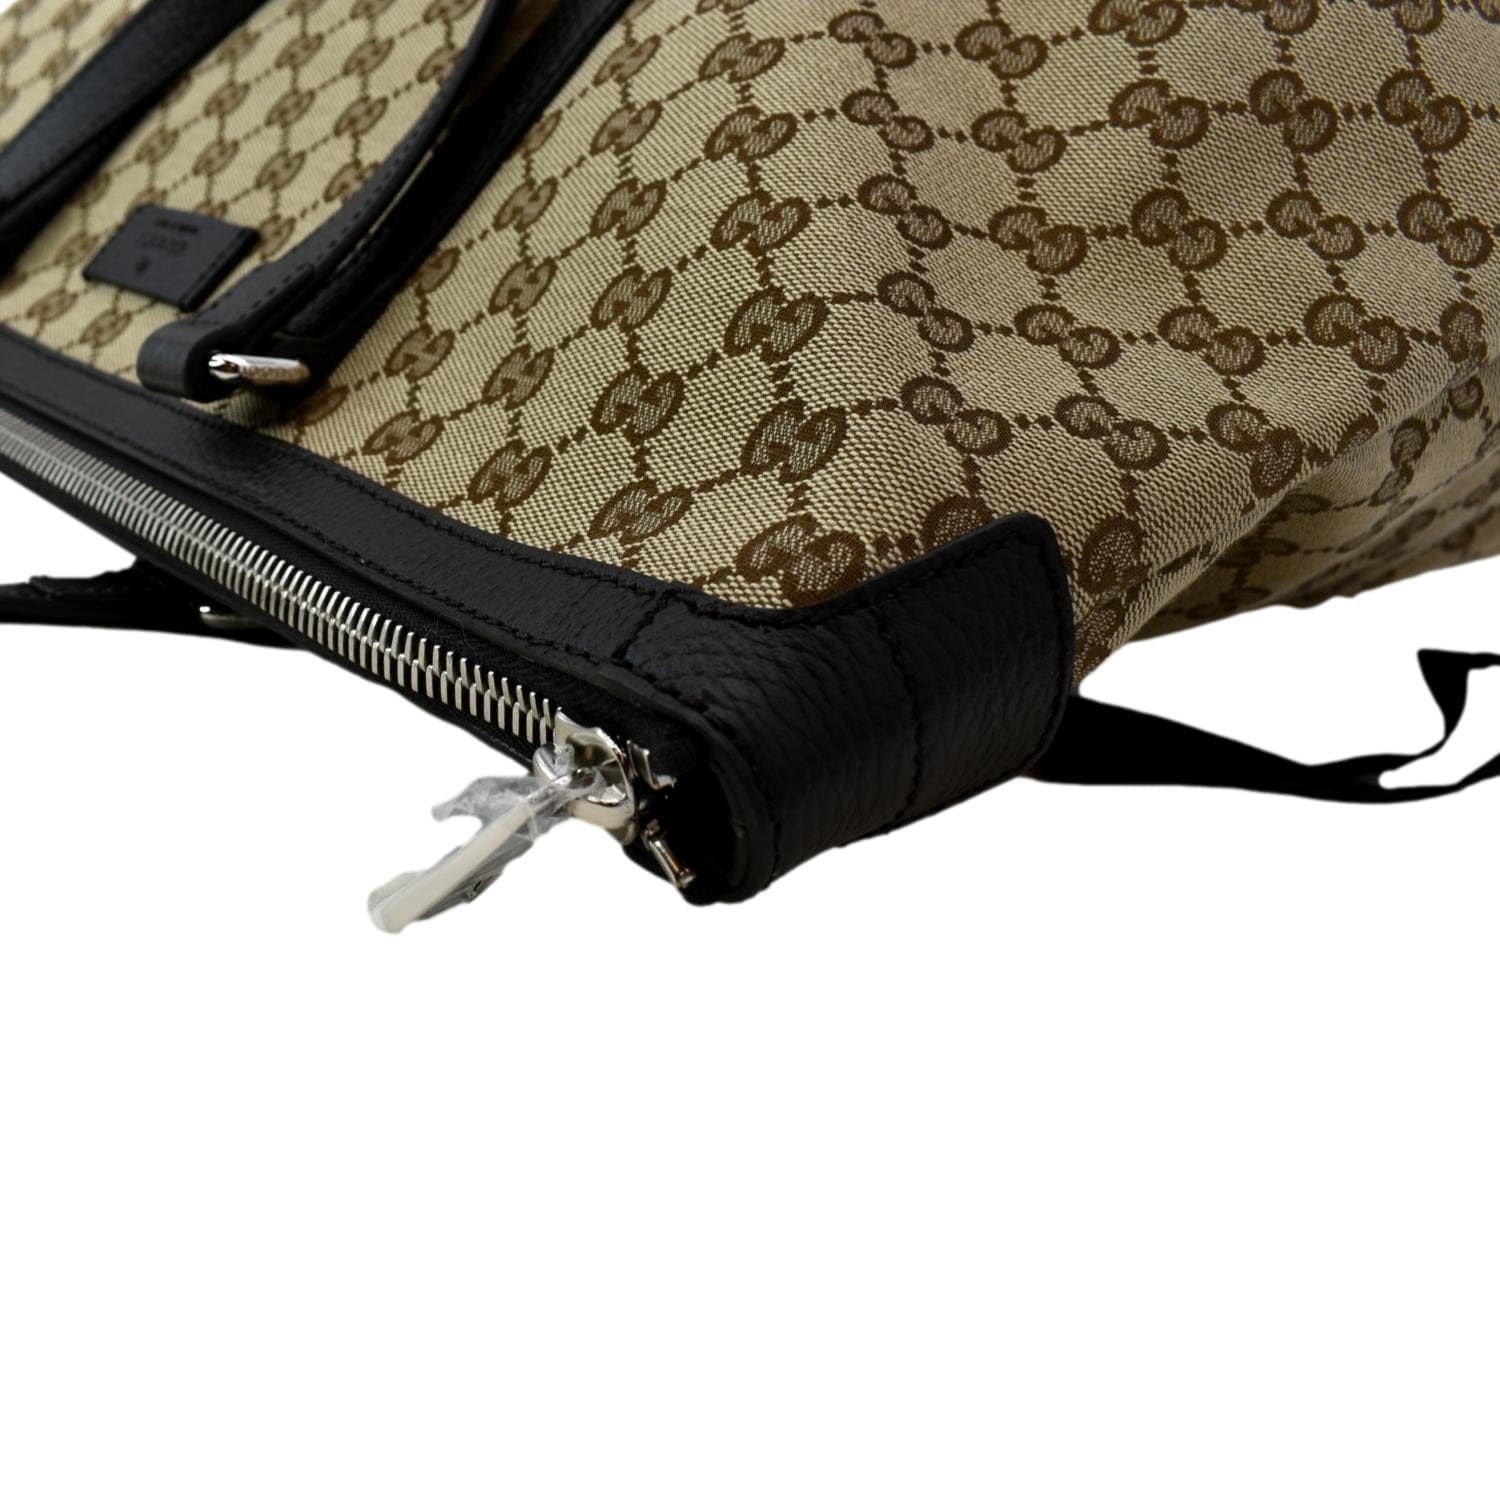 Gucci Beige/Ebony GG Canvas Carryall Duffle Bag Gucci